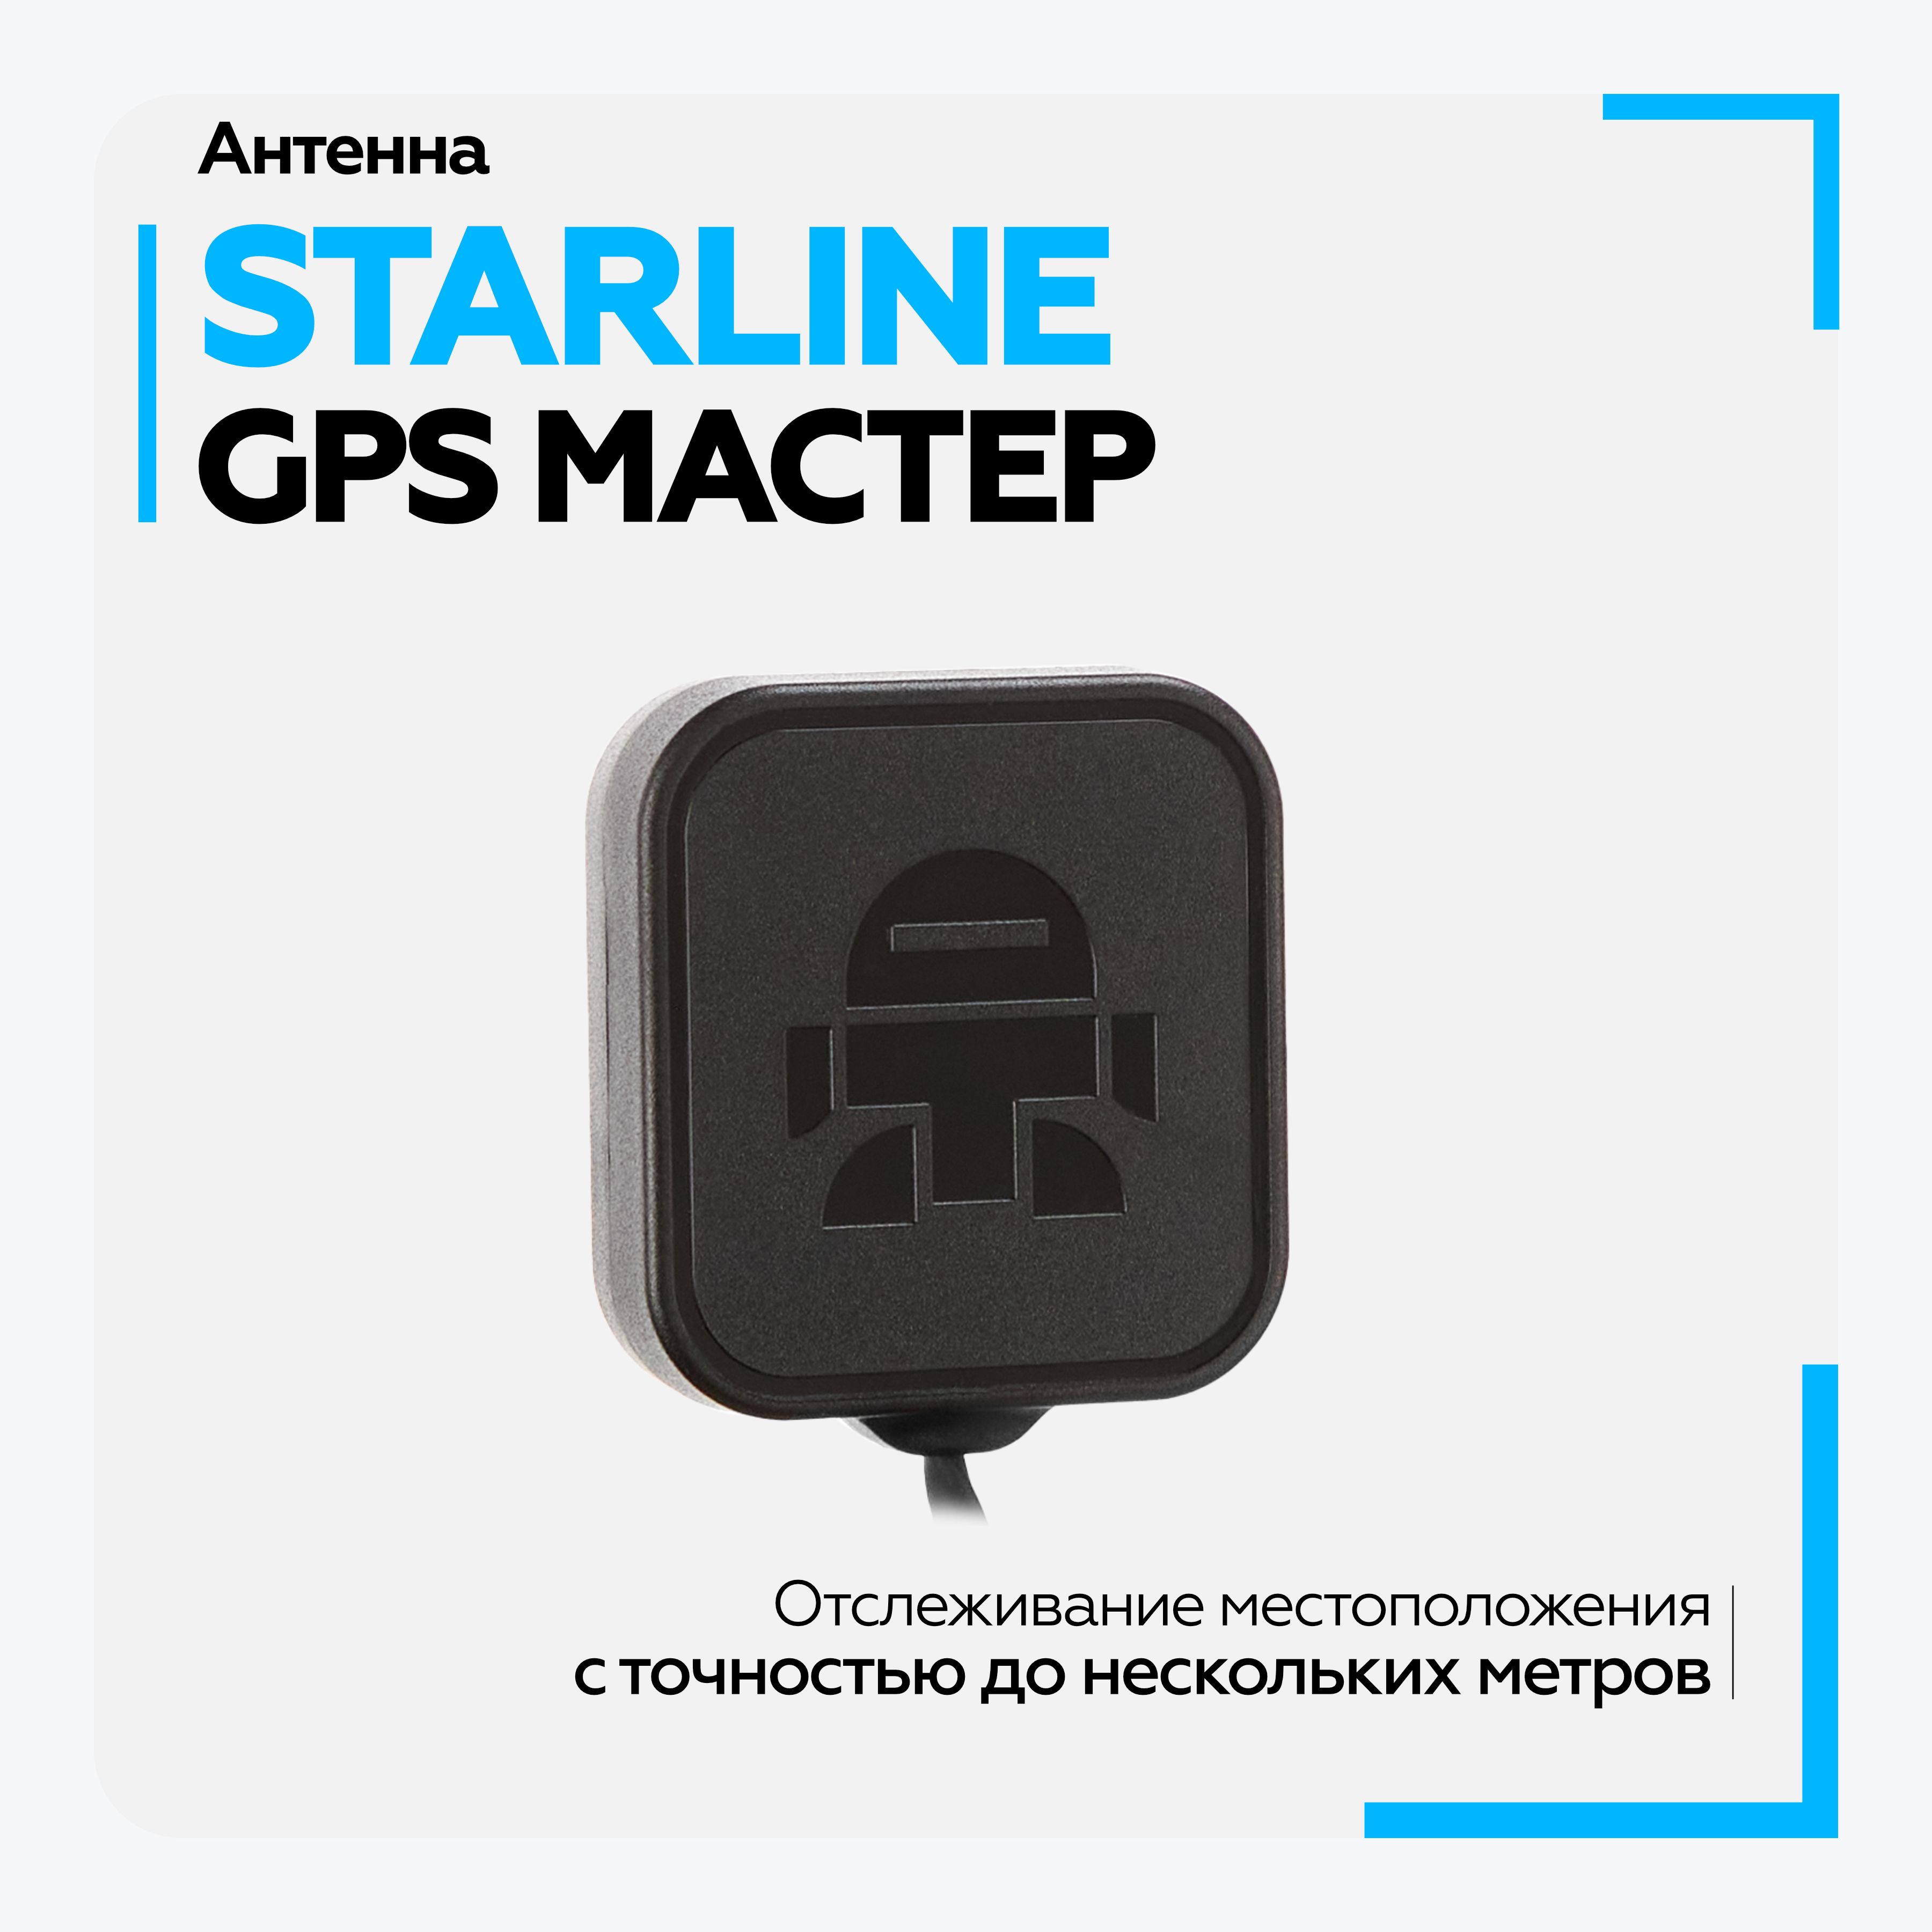 GPS-ГЛОНАСС модуль StarLine для определения координат и мониторинга автомобиля